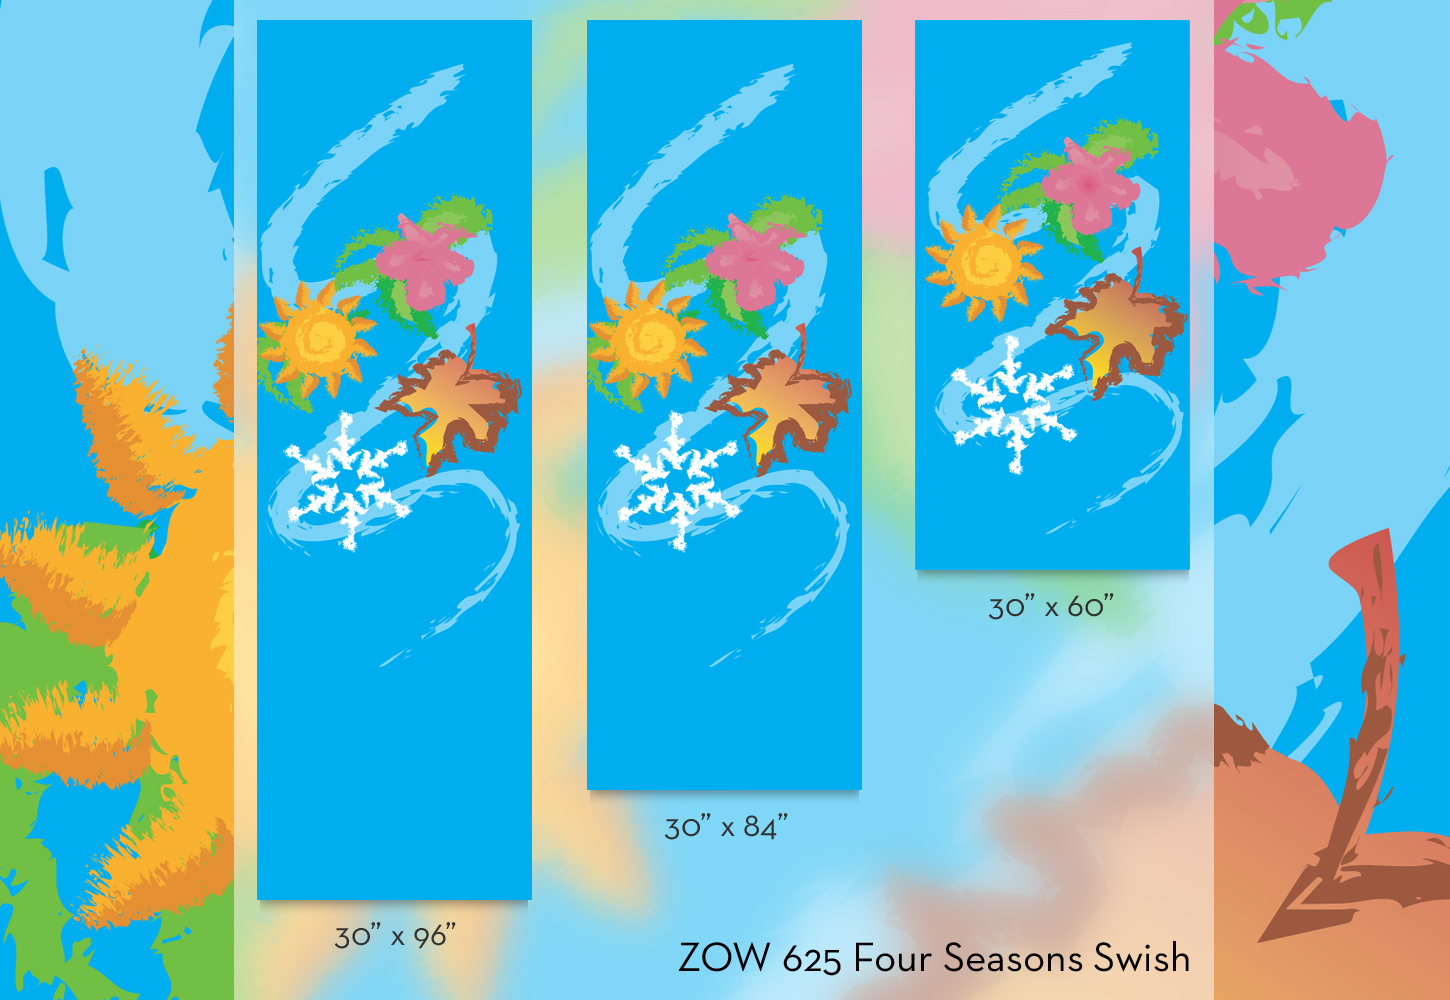 ZOW 625 Four Seasons Swish